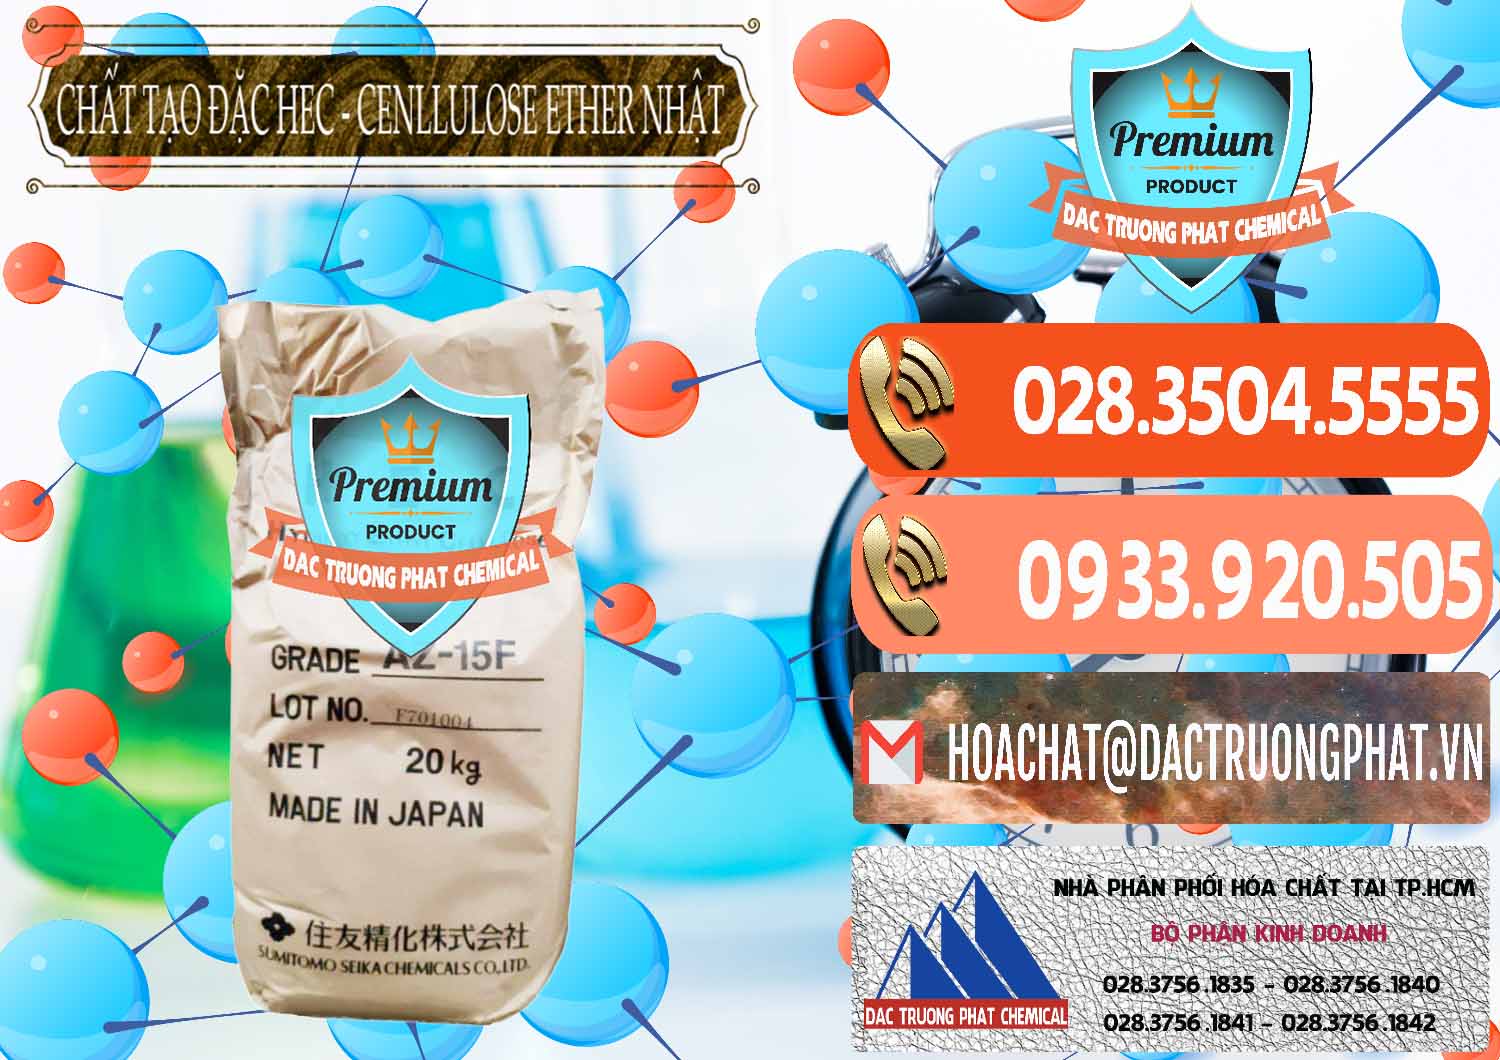 Cty chuyên nhập khẩu & bán Chất Tạo Đặc Hec Mecellose – Cenllulose Ether Nhật Bản Japan - 0367 - Công ty cung cấp - nhập khẩu hóa chất tại TP.HCM - hoachatmientay.com